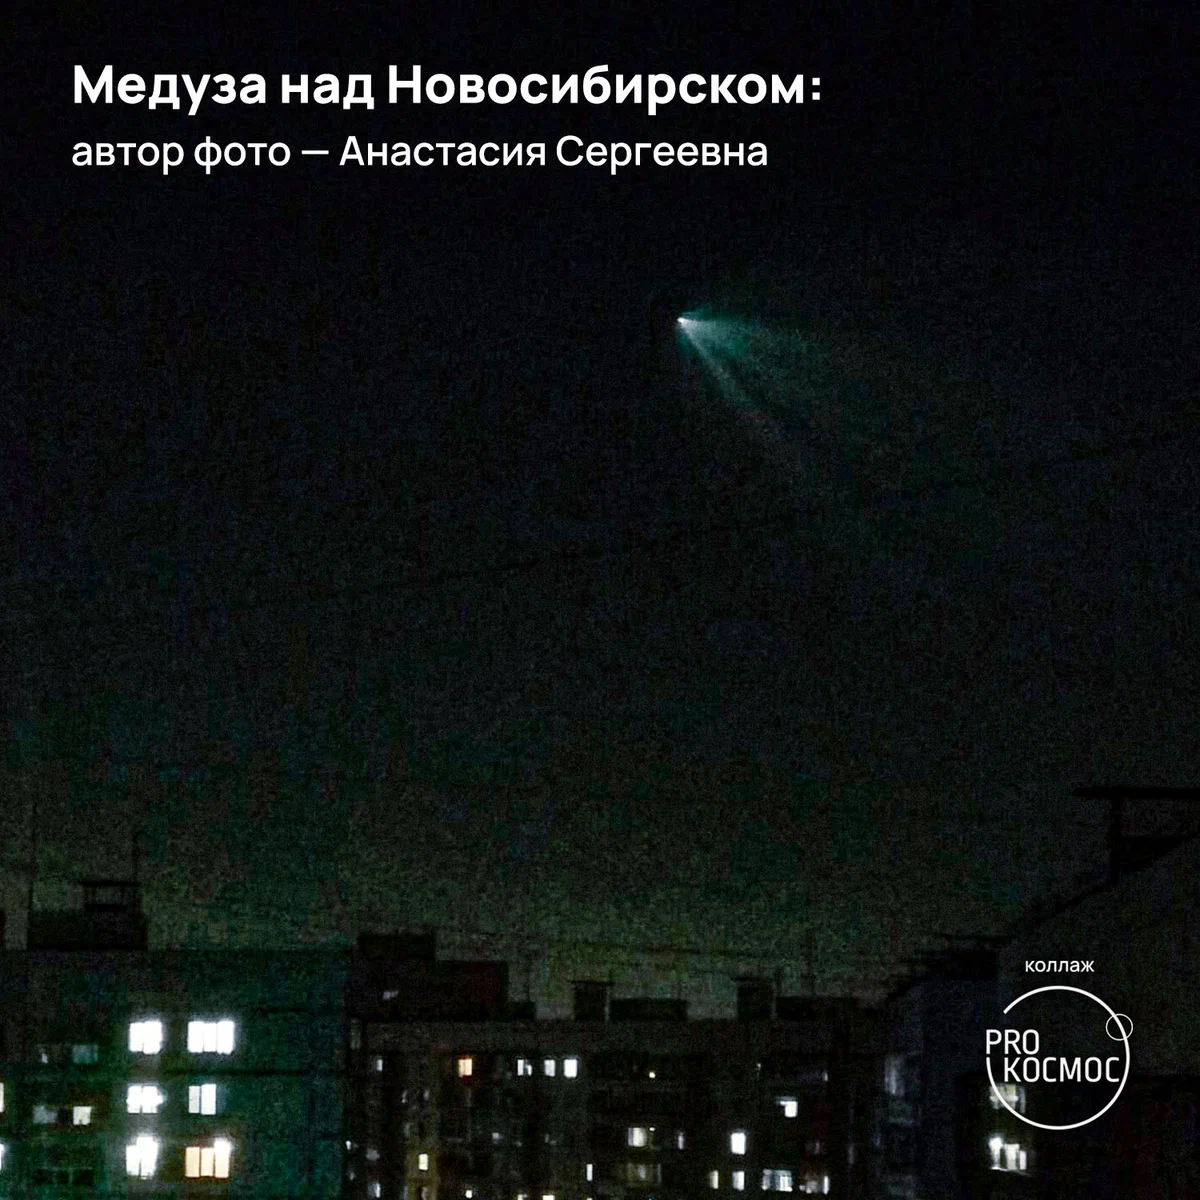 Медузы в небесах от «Союза МС-22»: сообщество AstroAlert опубликовало снимки редкого атмосферного явления из разных городов height=1200px width=1200px